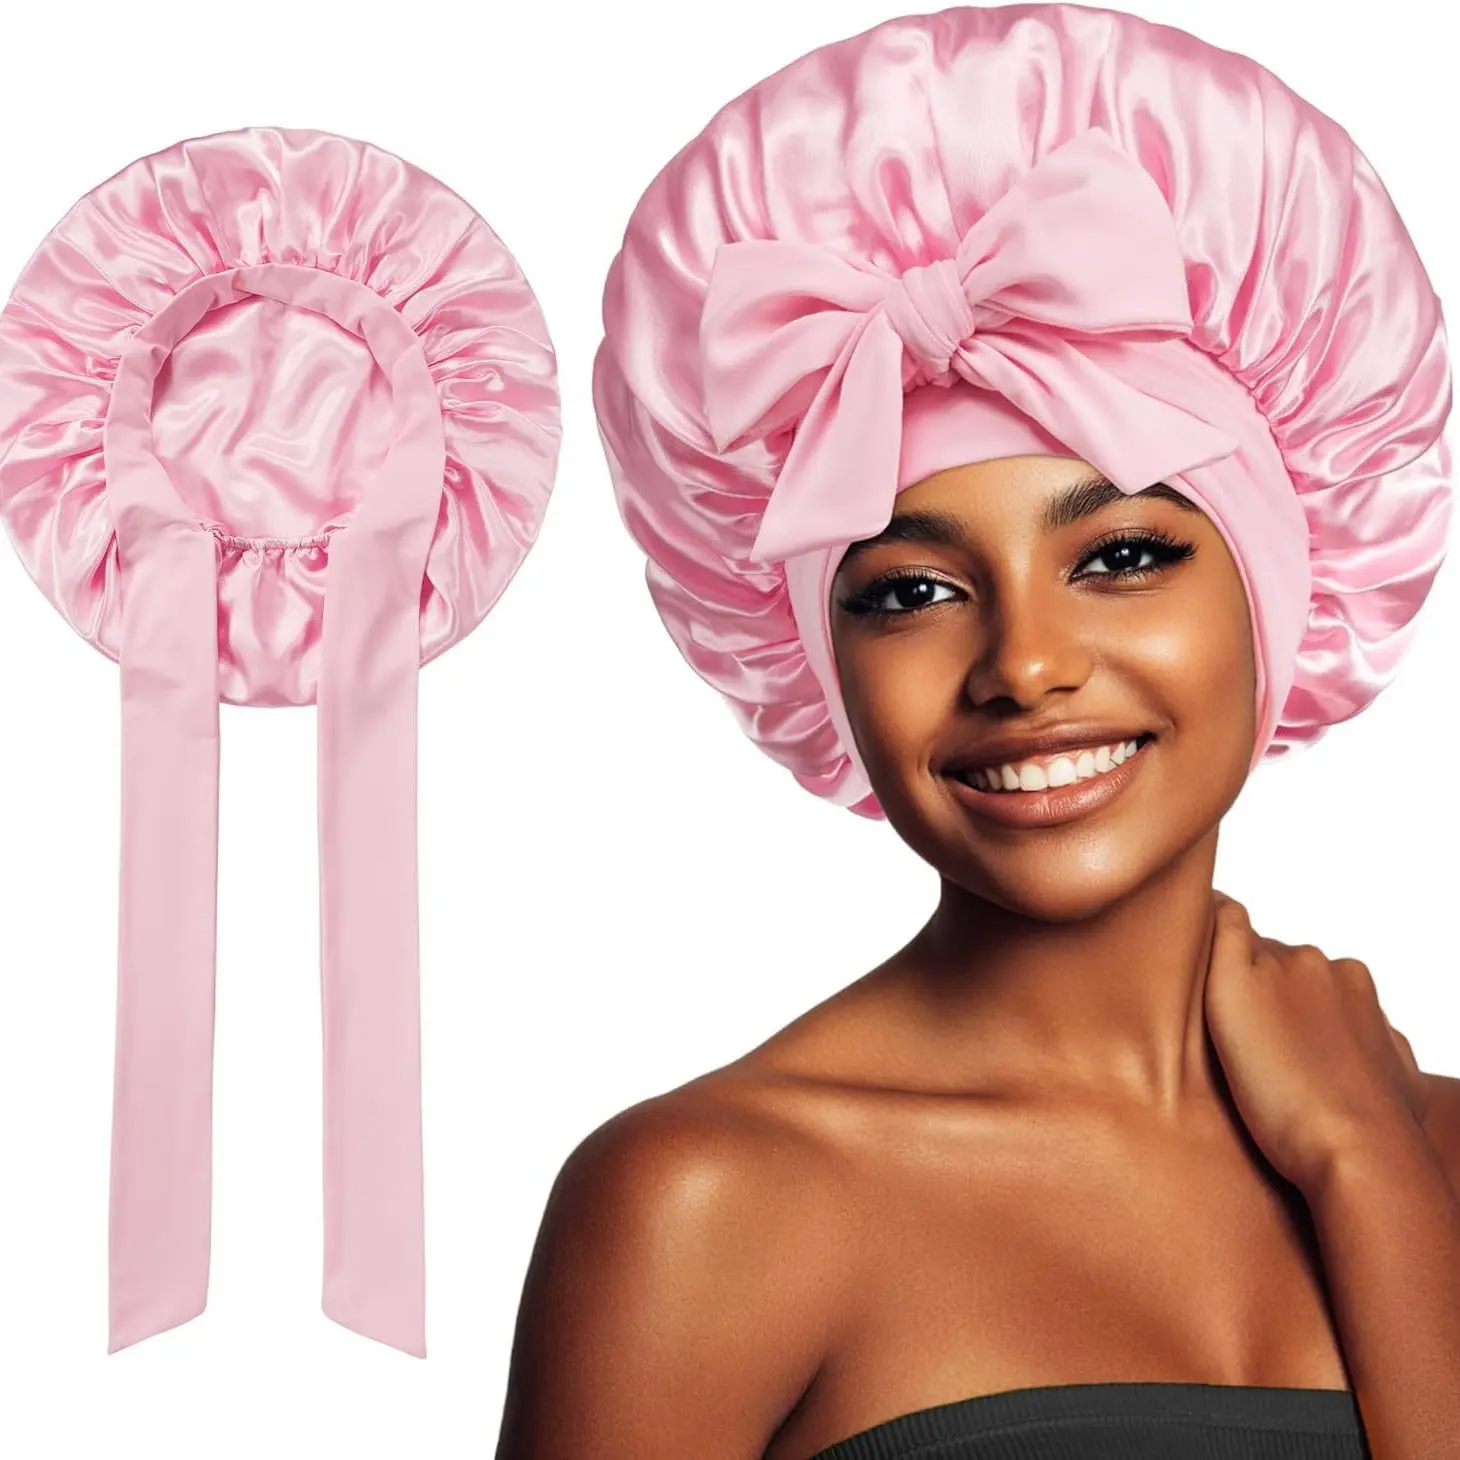 Sang trọng satin ngủ nắp ca-pô cho phụ nữ thoải mái có thể điều chỉnh tie cho an toàn phù hợp lý tưởng cho việc bảo quản kiểu tóc xoăn qua đêm